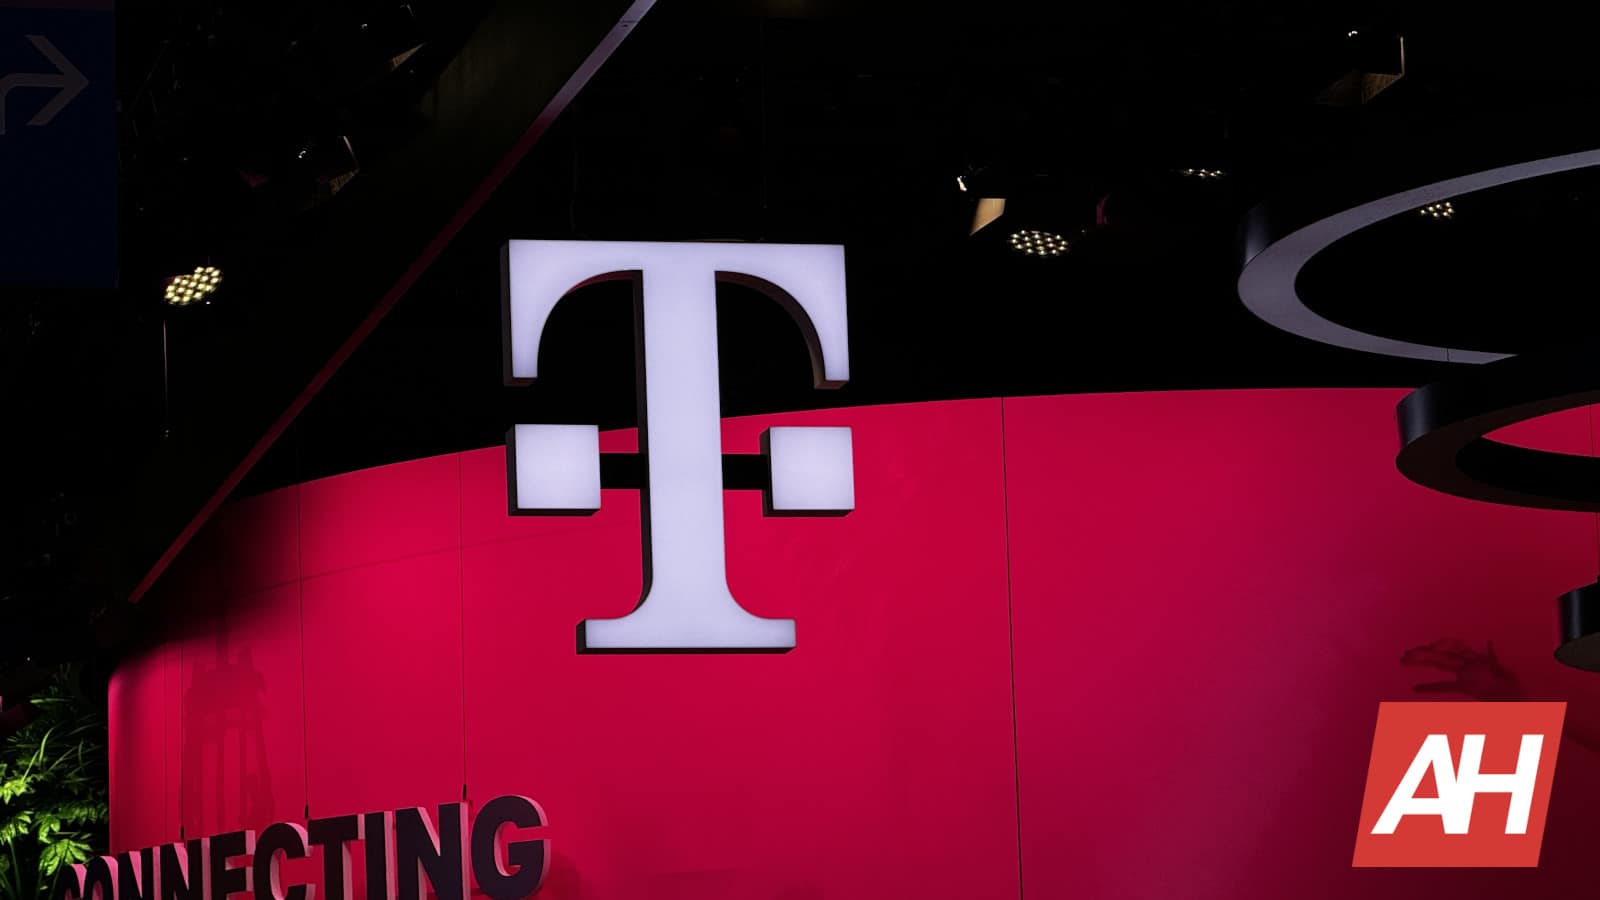 Según se informa, T-Mobile quiere adquirir Metronet a través de una empresa conjunta